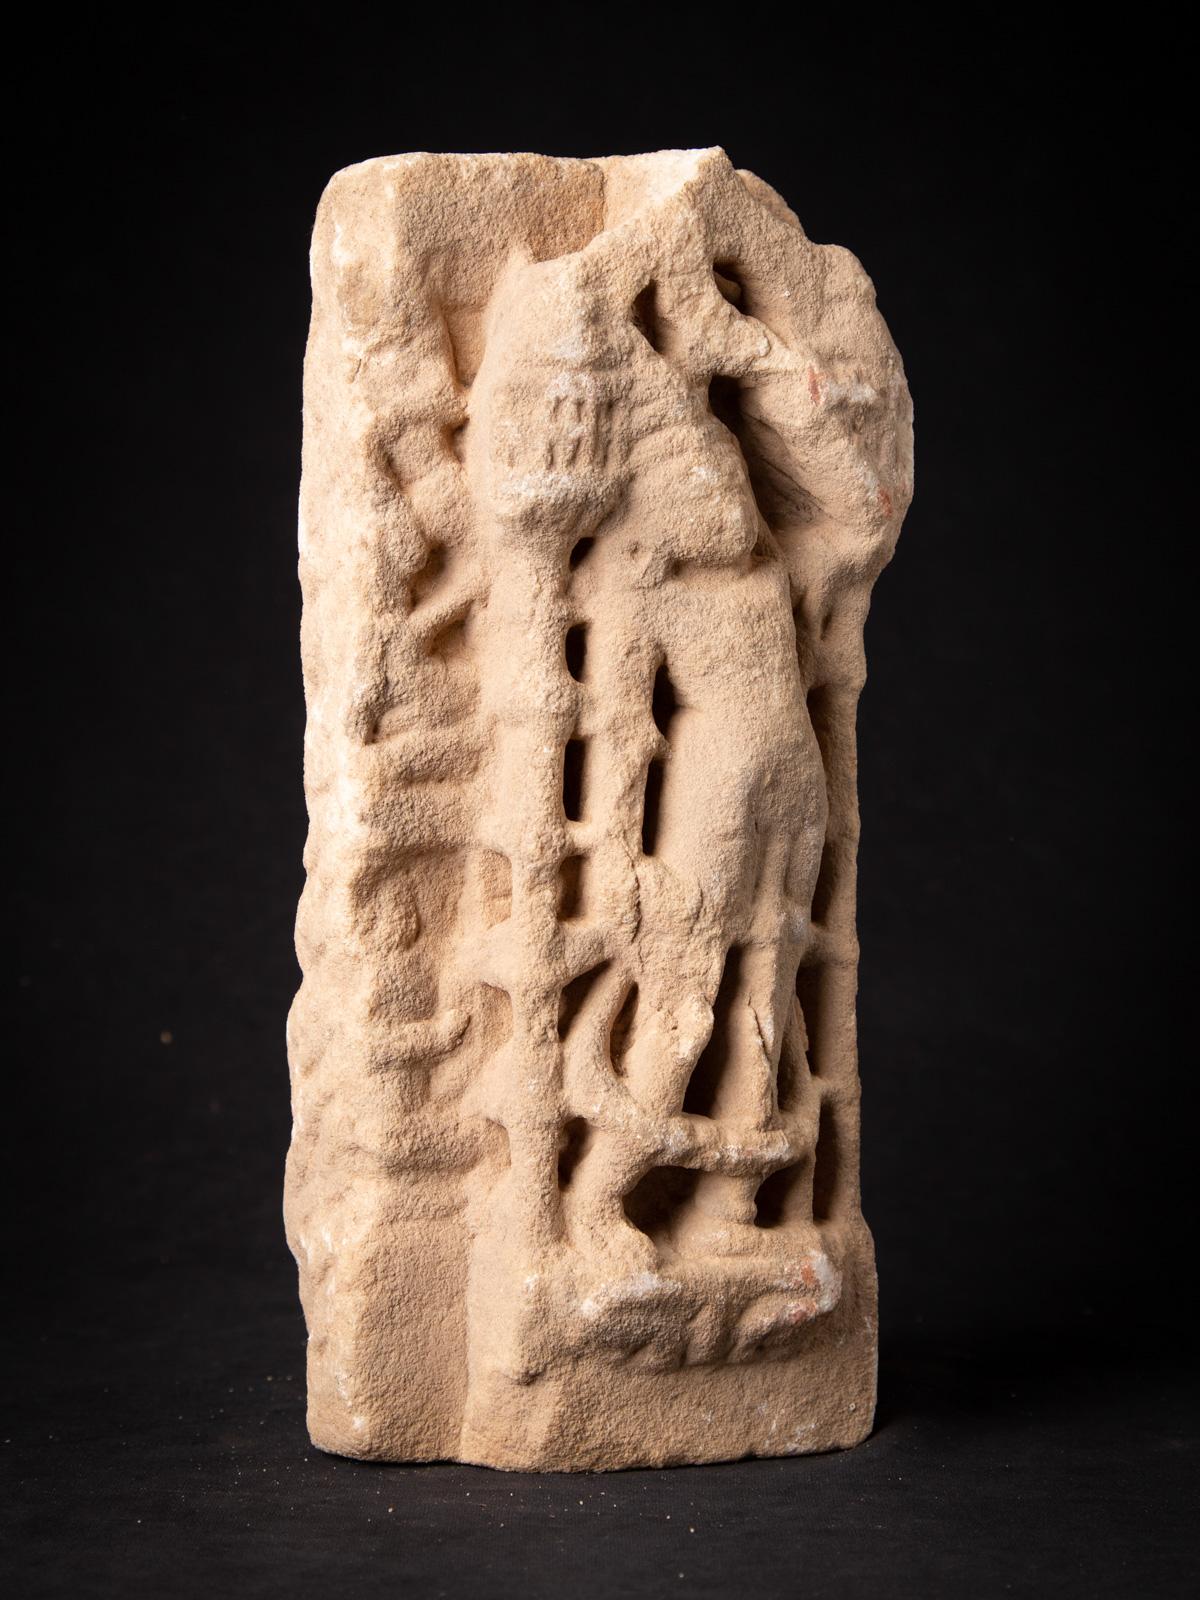 MATERIAL: Marmor
32,5 cm hoch 
14 cm breit und 11 cm tief
Gewicht: 8.5 kg
Mit Ursprung in Indien
14. Jahrhundert
Ursprünglich aus einem Tempel in Rajasthan
Indra als Träger eines Fliegenfächers. Ist ein ständiger Begleiter von Jina Bildern

